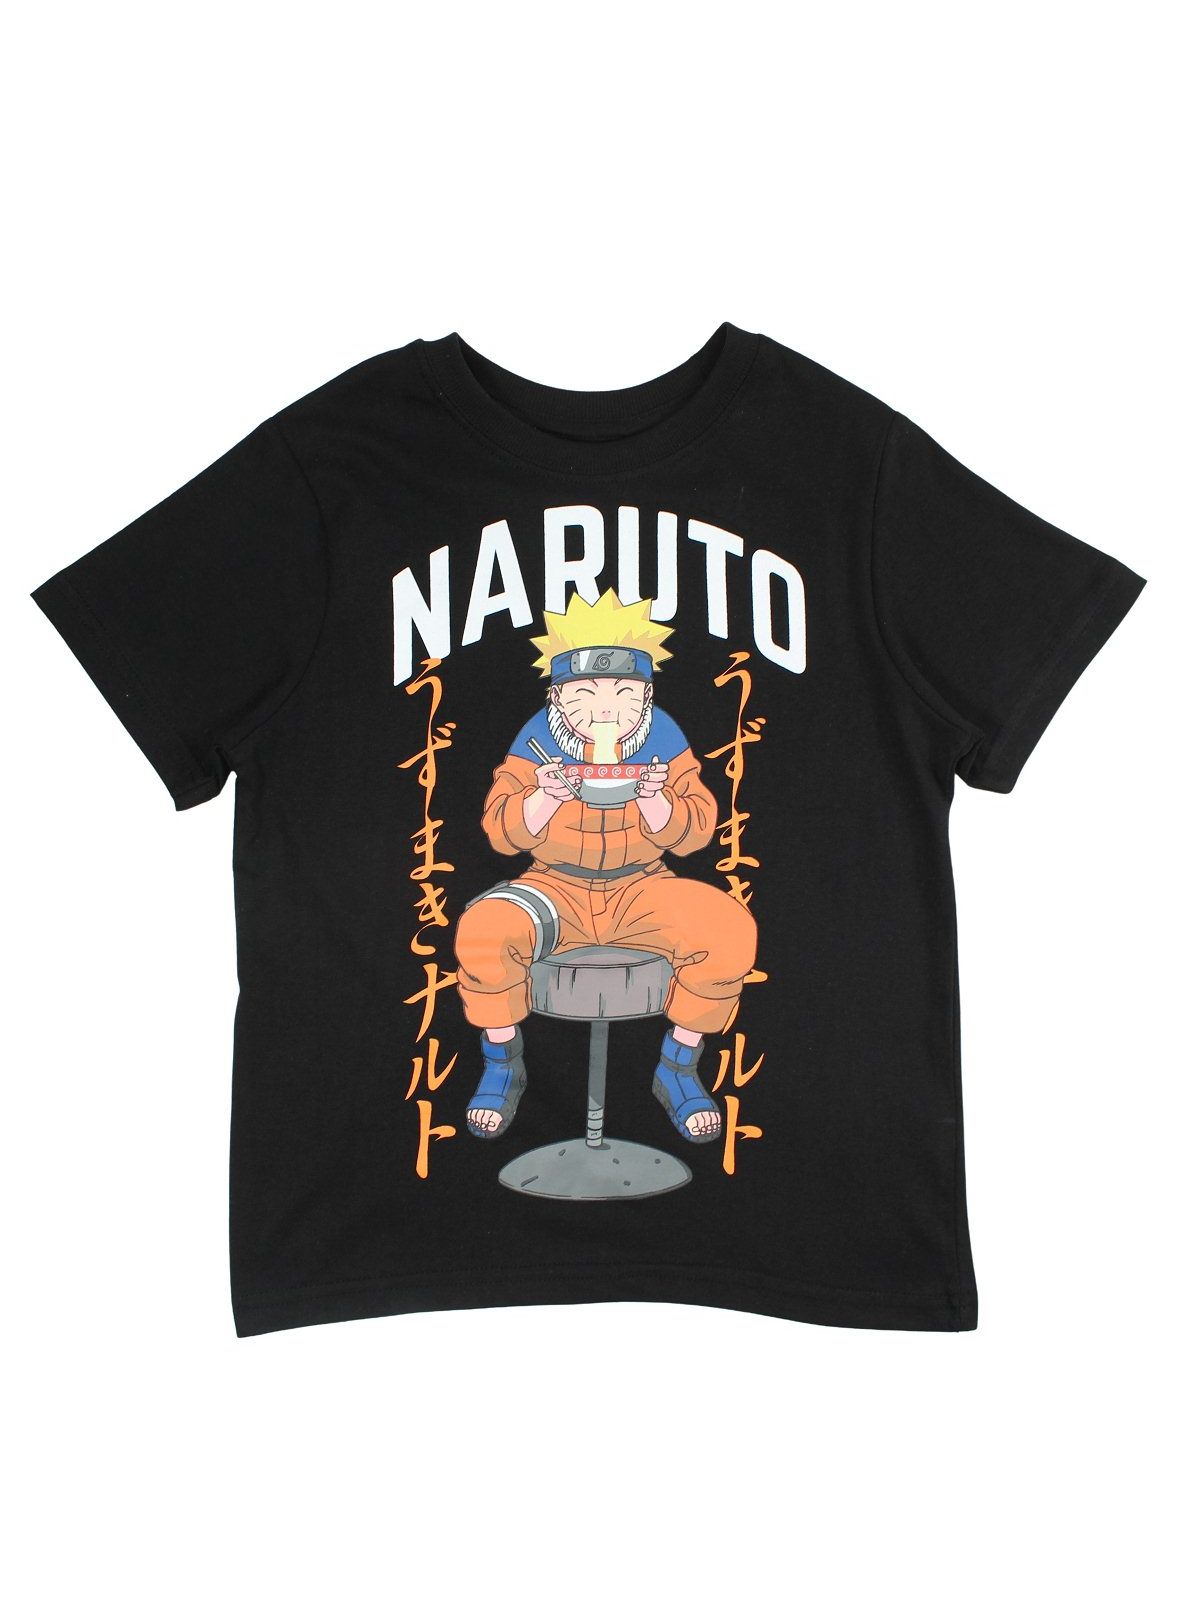 Naruto set